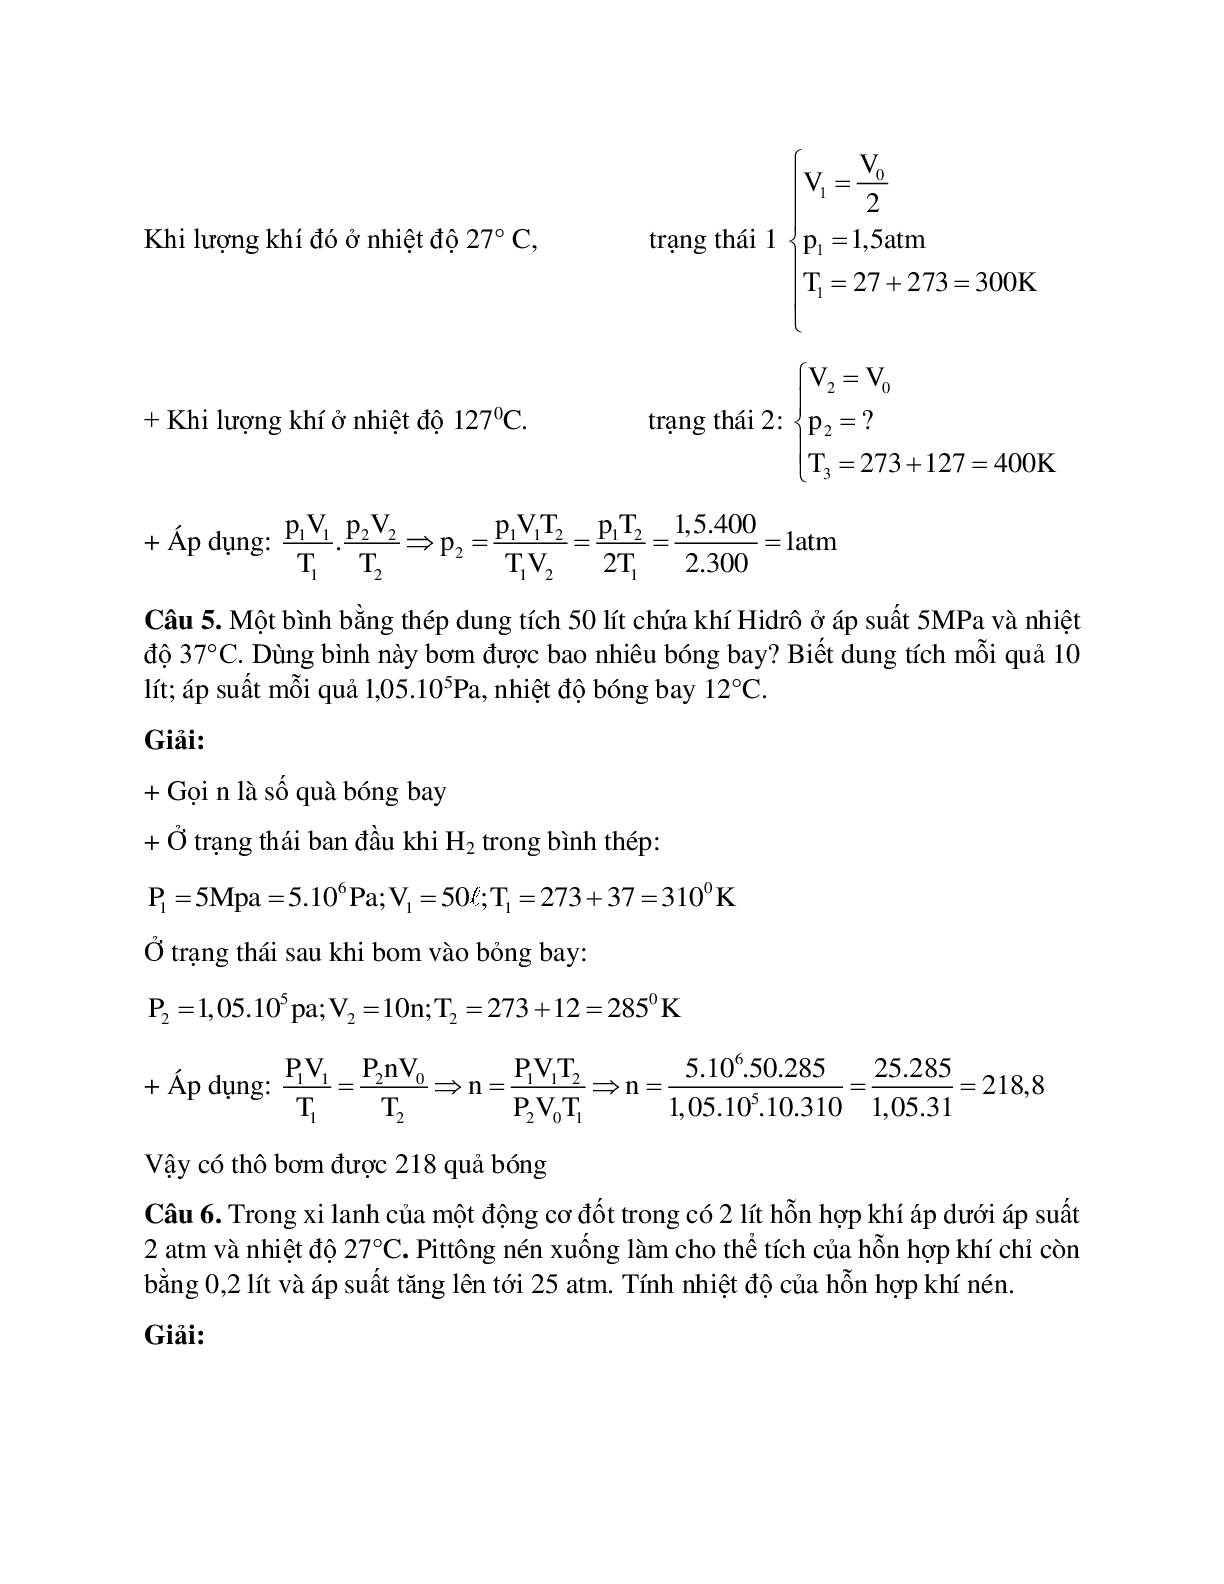 Bài tập về phương trình trạng thái khí lý tưởng có lời giải (trang 5)